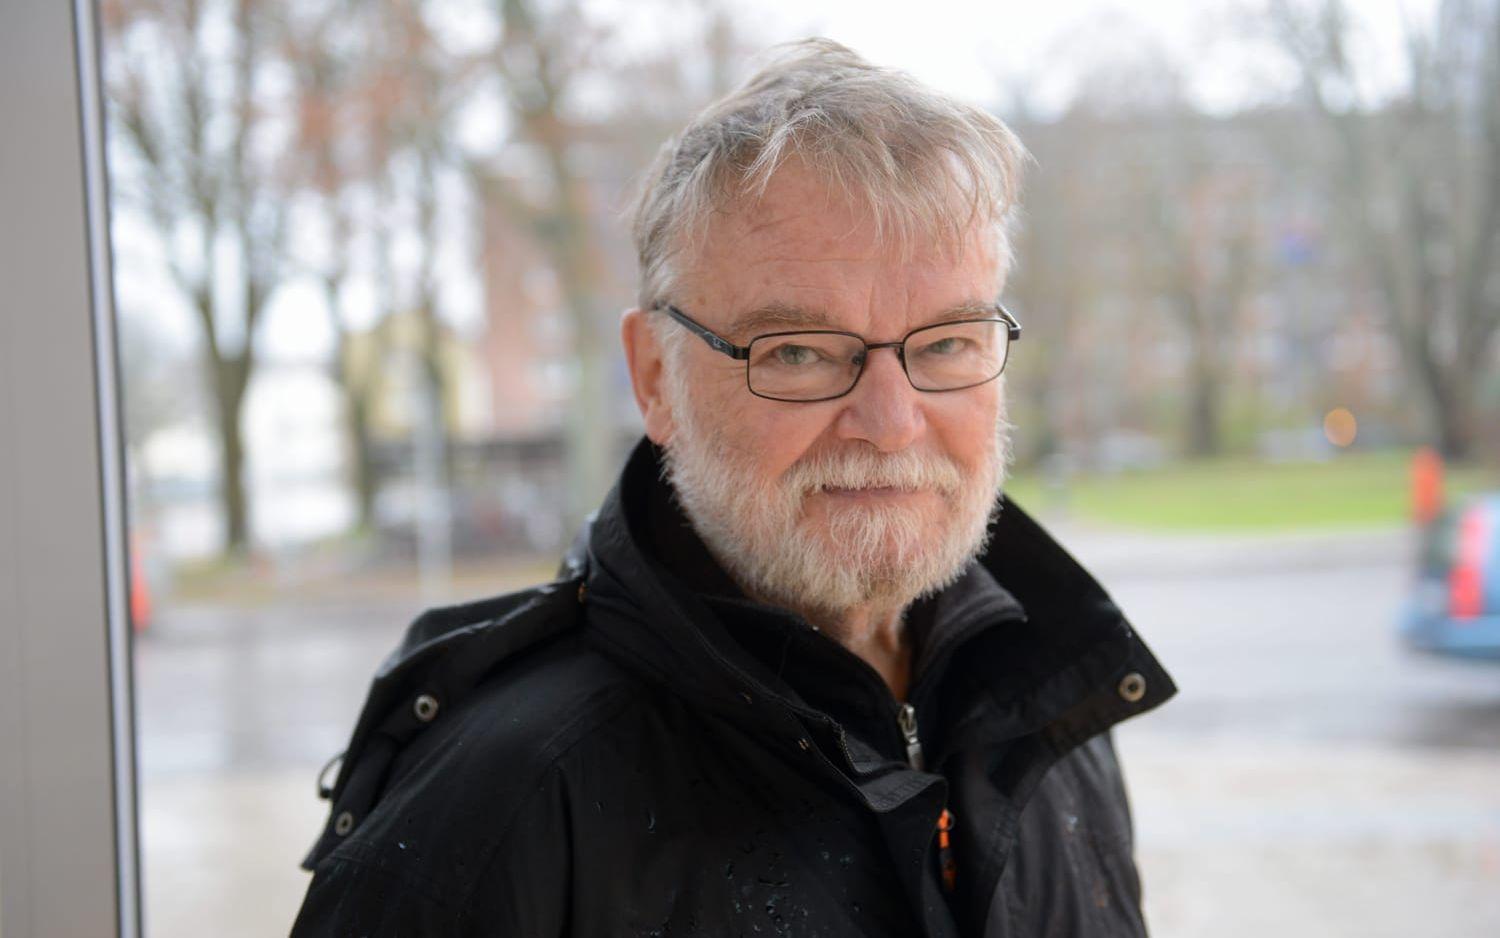 Lutz Rininsland, Vänsterpartiet Vänersborg: ”Vi arbetar för att BUN ska få mer pengar och så har också blivit fallet 2016 och 2017. Mindre grupper förutsätter fler förskolor. Det tar tid, men det måste byggas fler. Vi motsatte oss en nedläggning av Nattugglan."